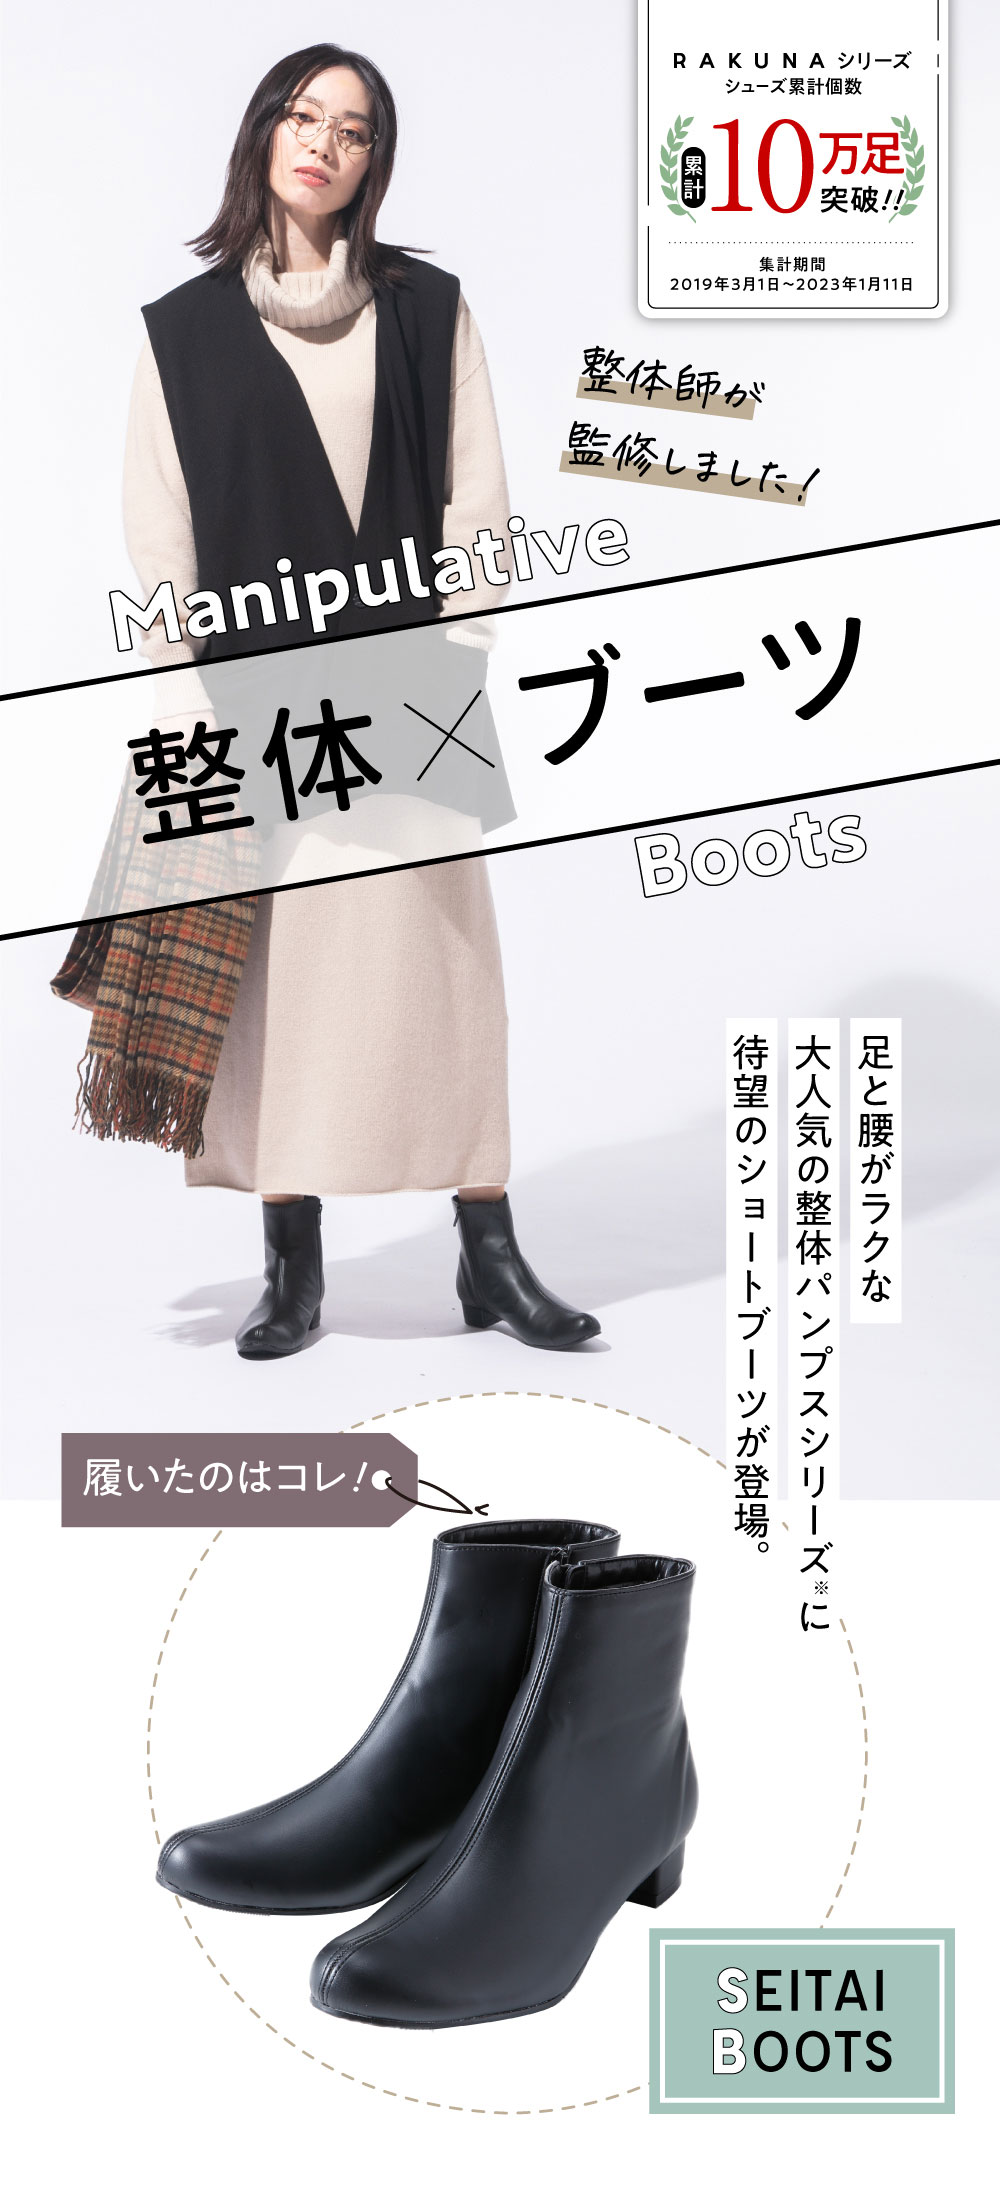 新春セール】整体ブーツ RAKUNA(ラクナ) | amepla